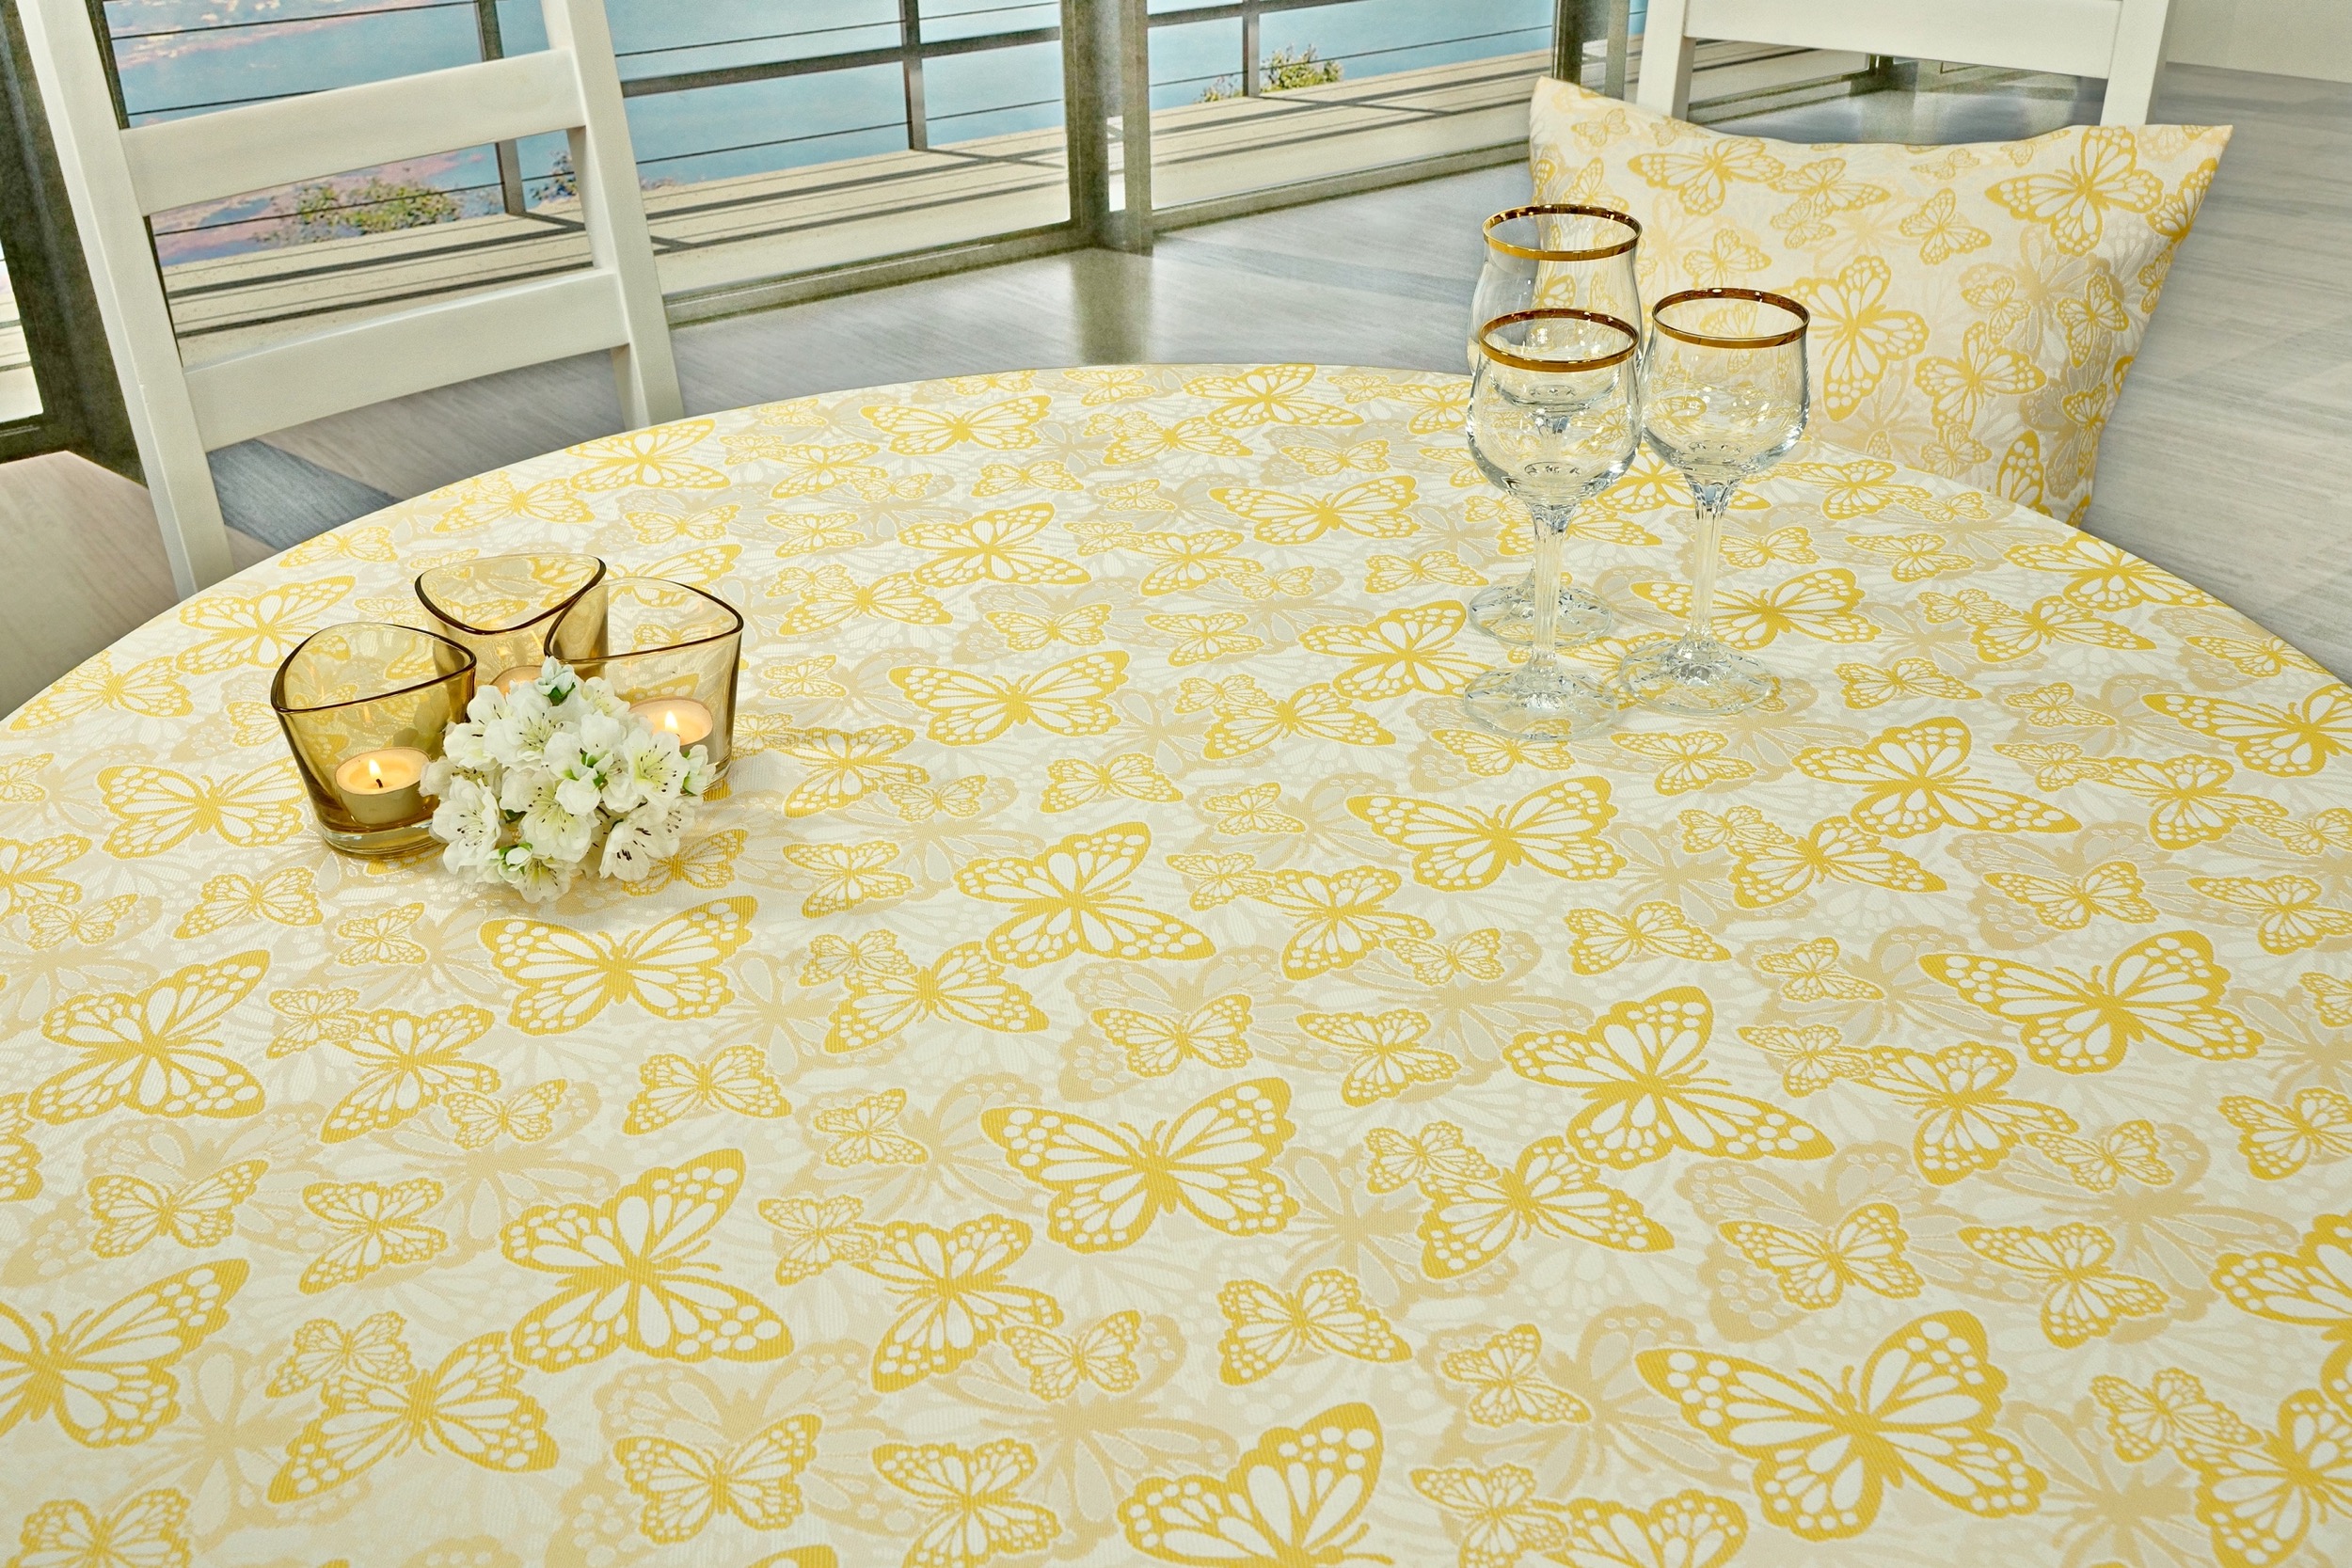 Fleckgeschützte Tischdecke Weiß Gelb Muster Springtime Breite 130 cm OVAL